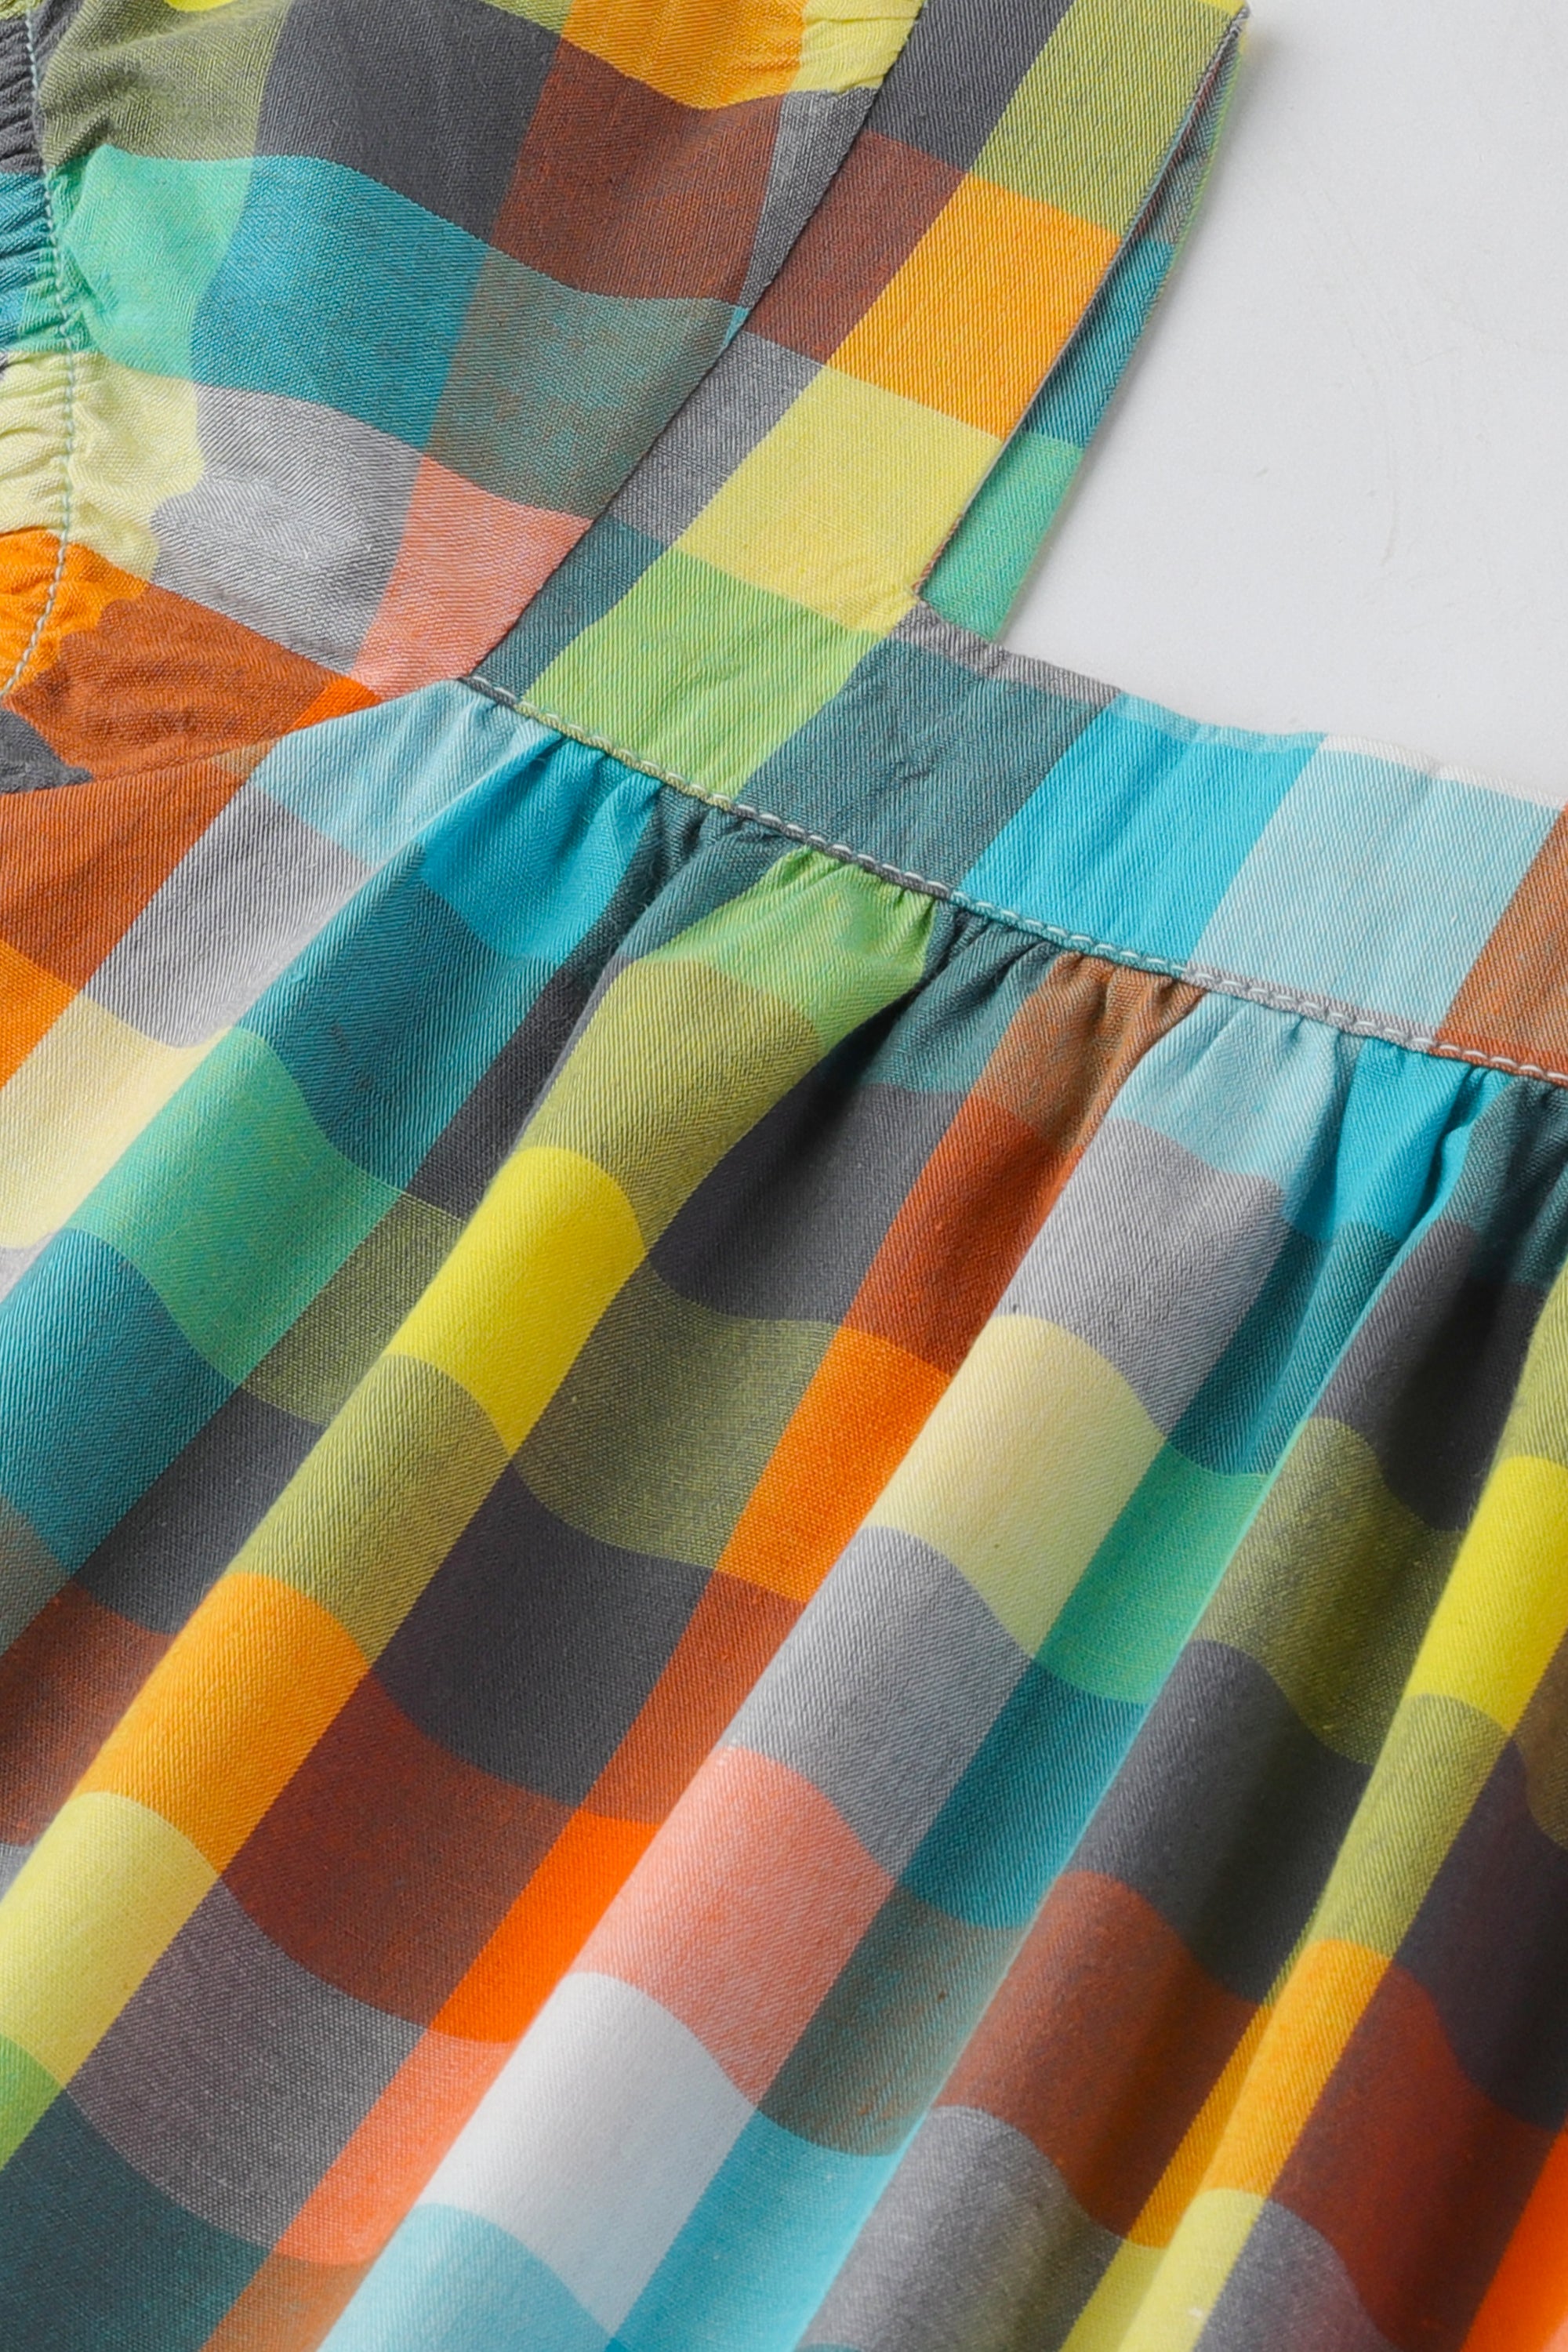 Multi-coloured Check Dress